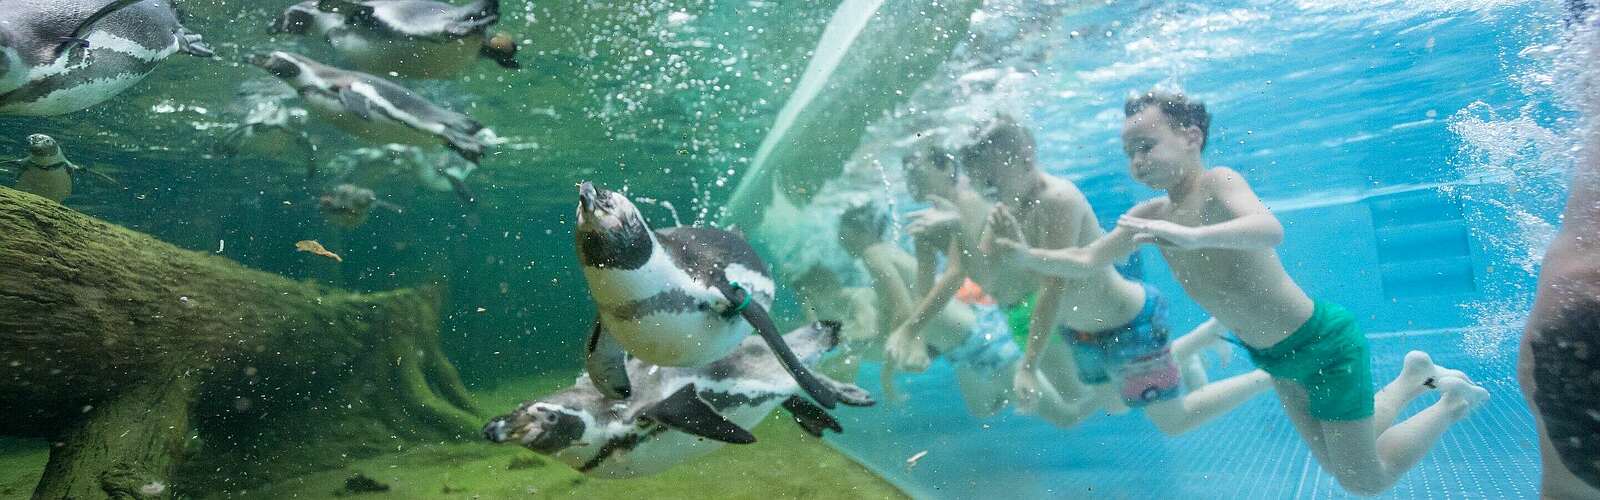 Schwimmen mit Pinguinen,
        
    

        
            Foto: Speewelten GmbH